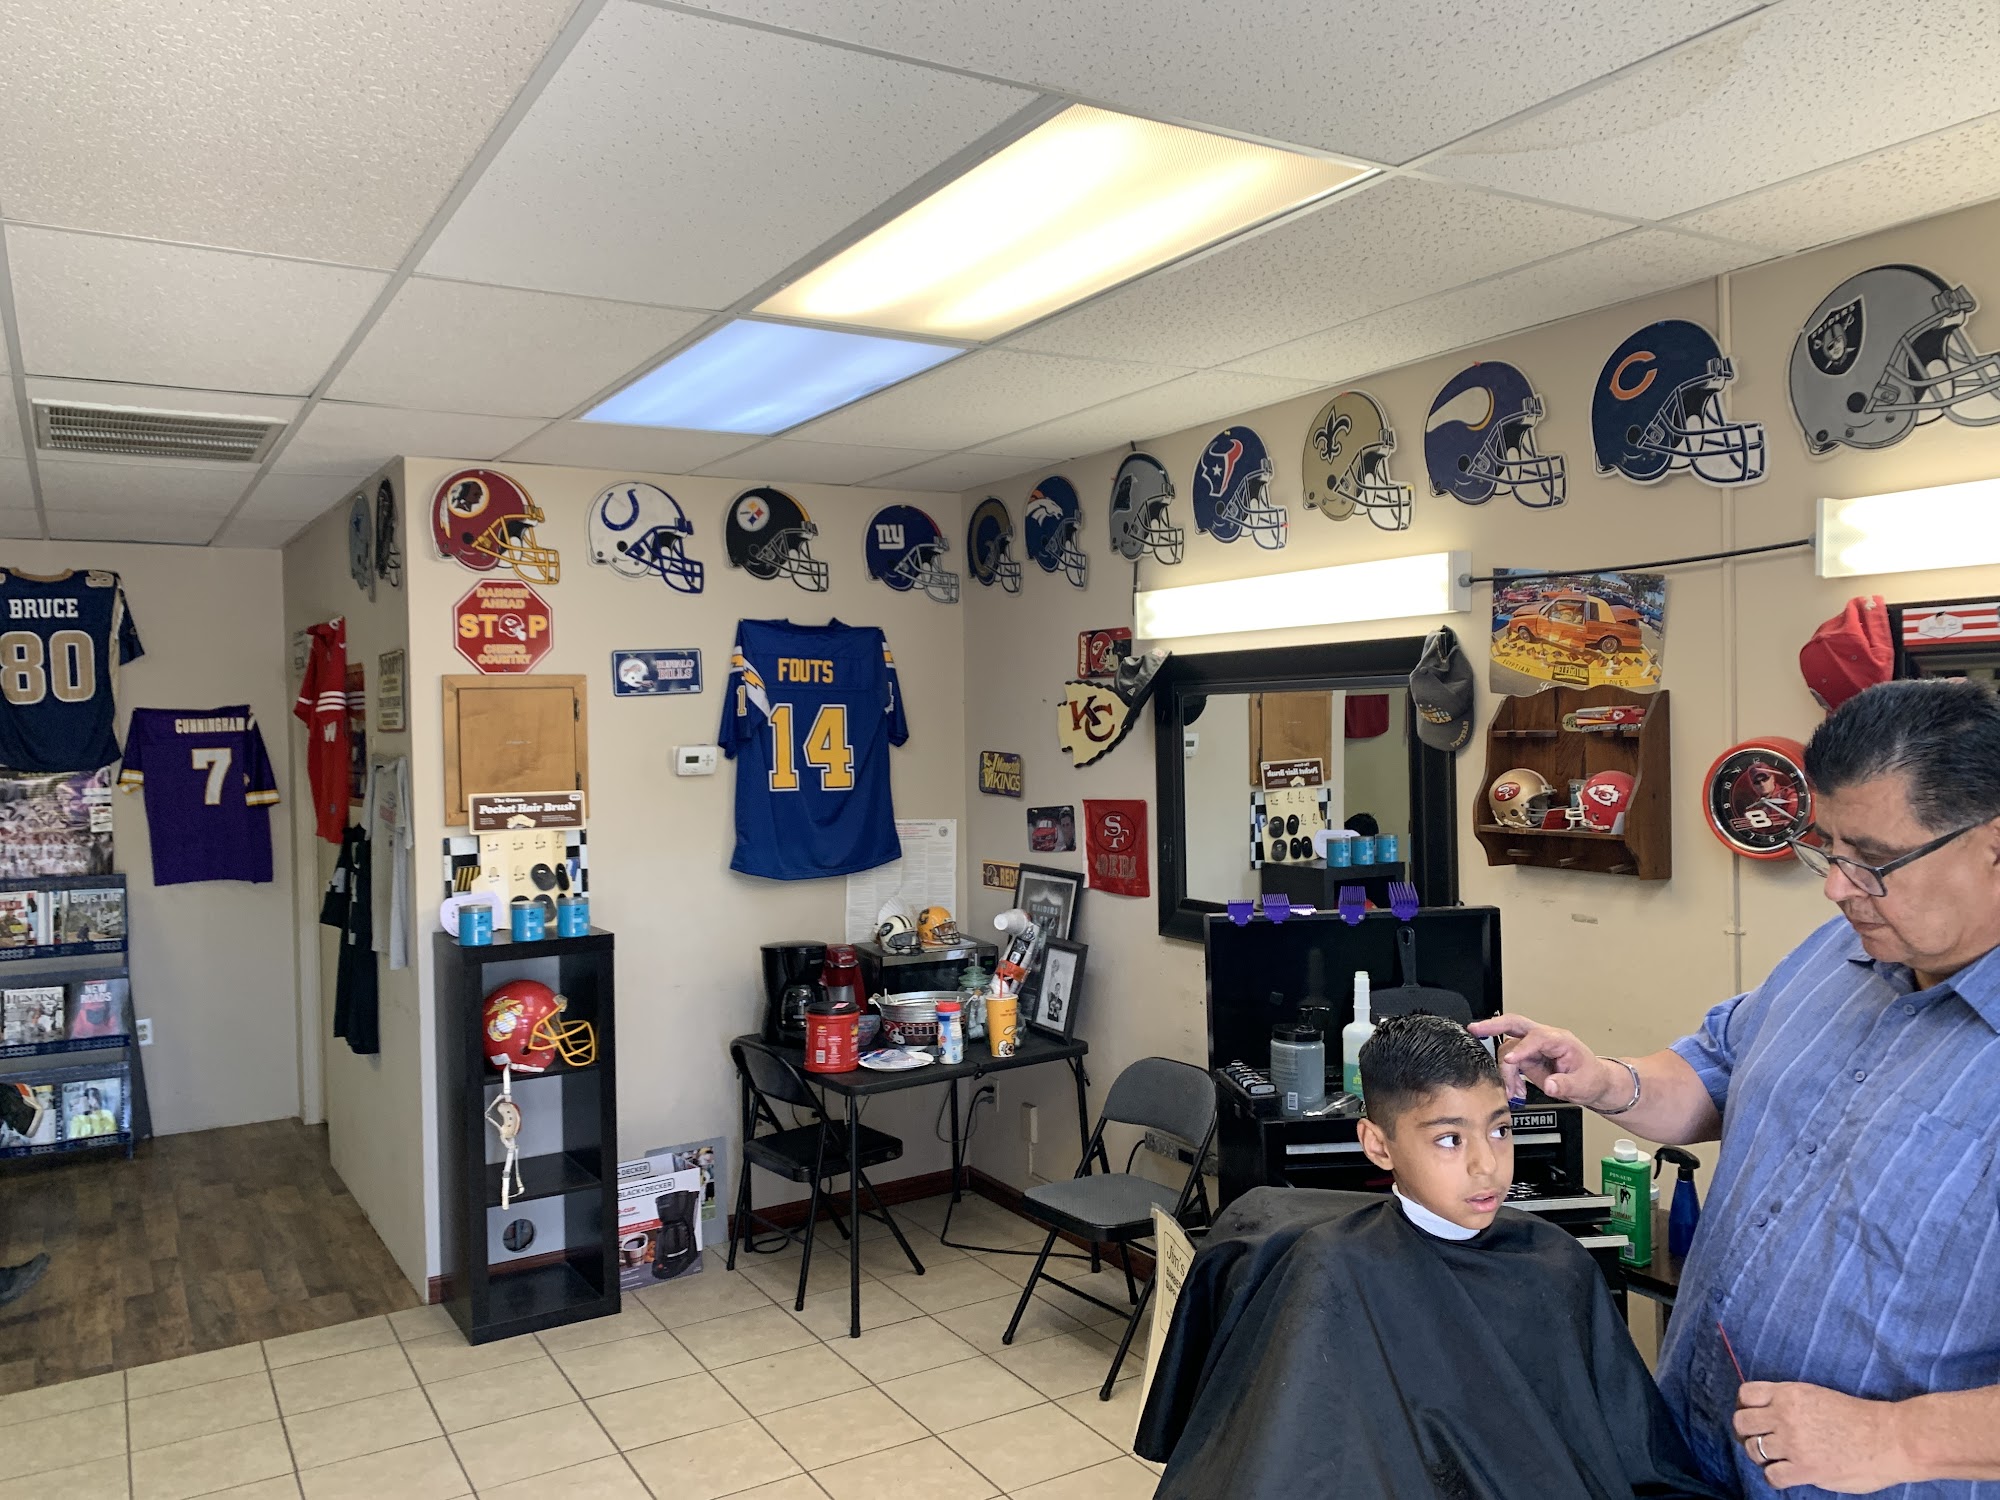 Mondo's Barber Shop 1400 Whitley Ave, Corcoran California 93212